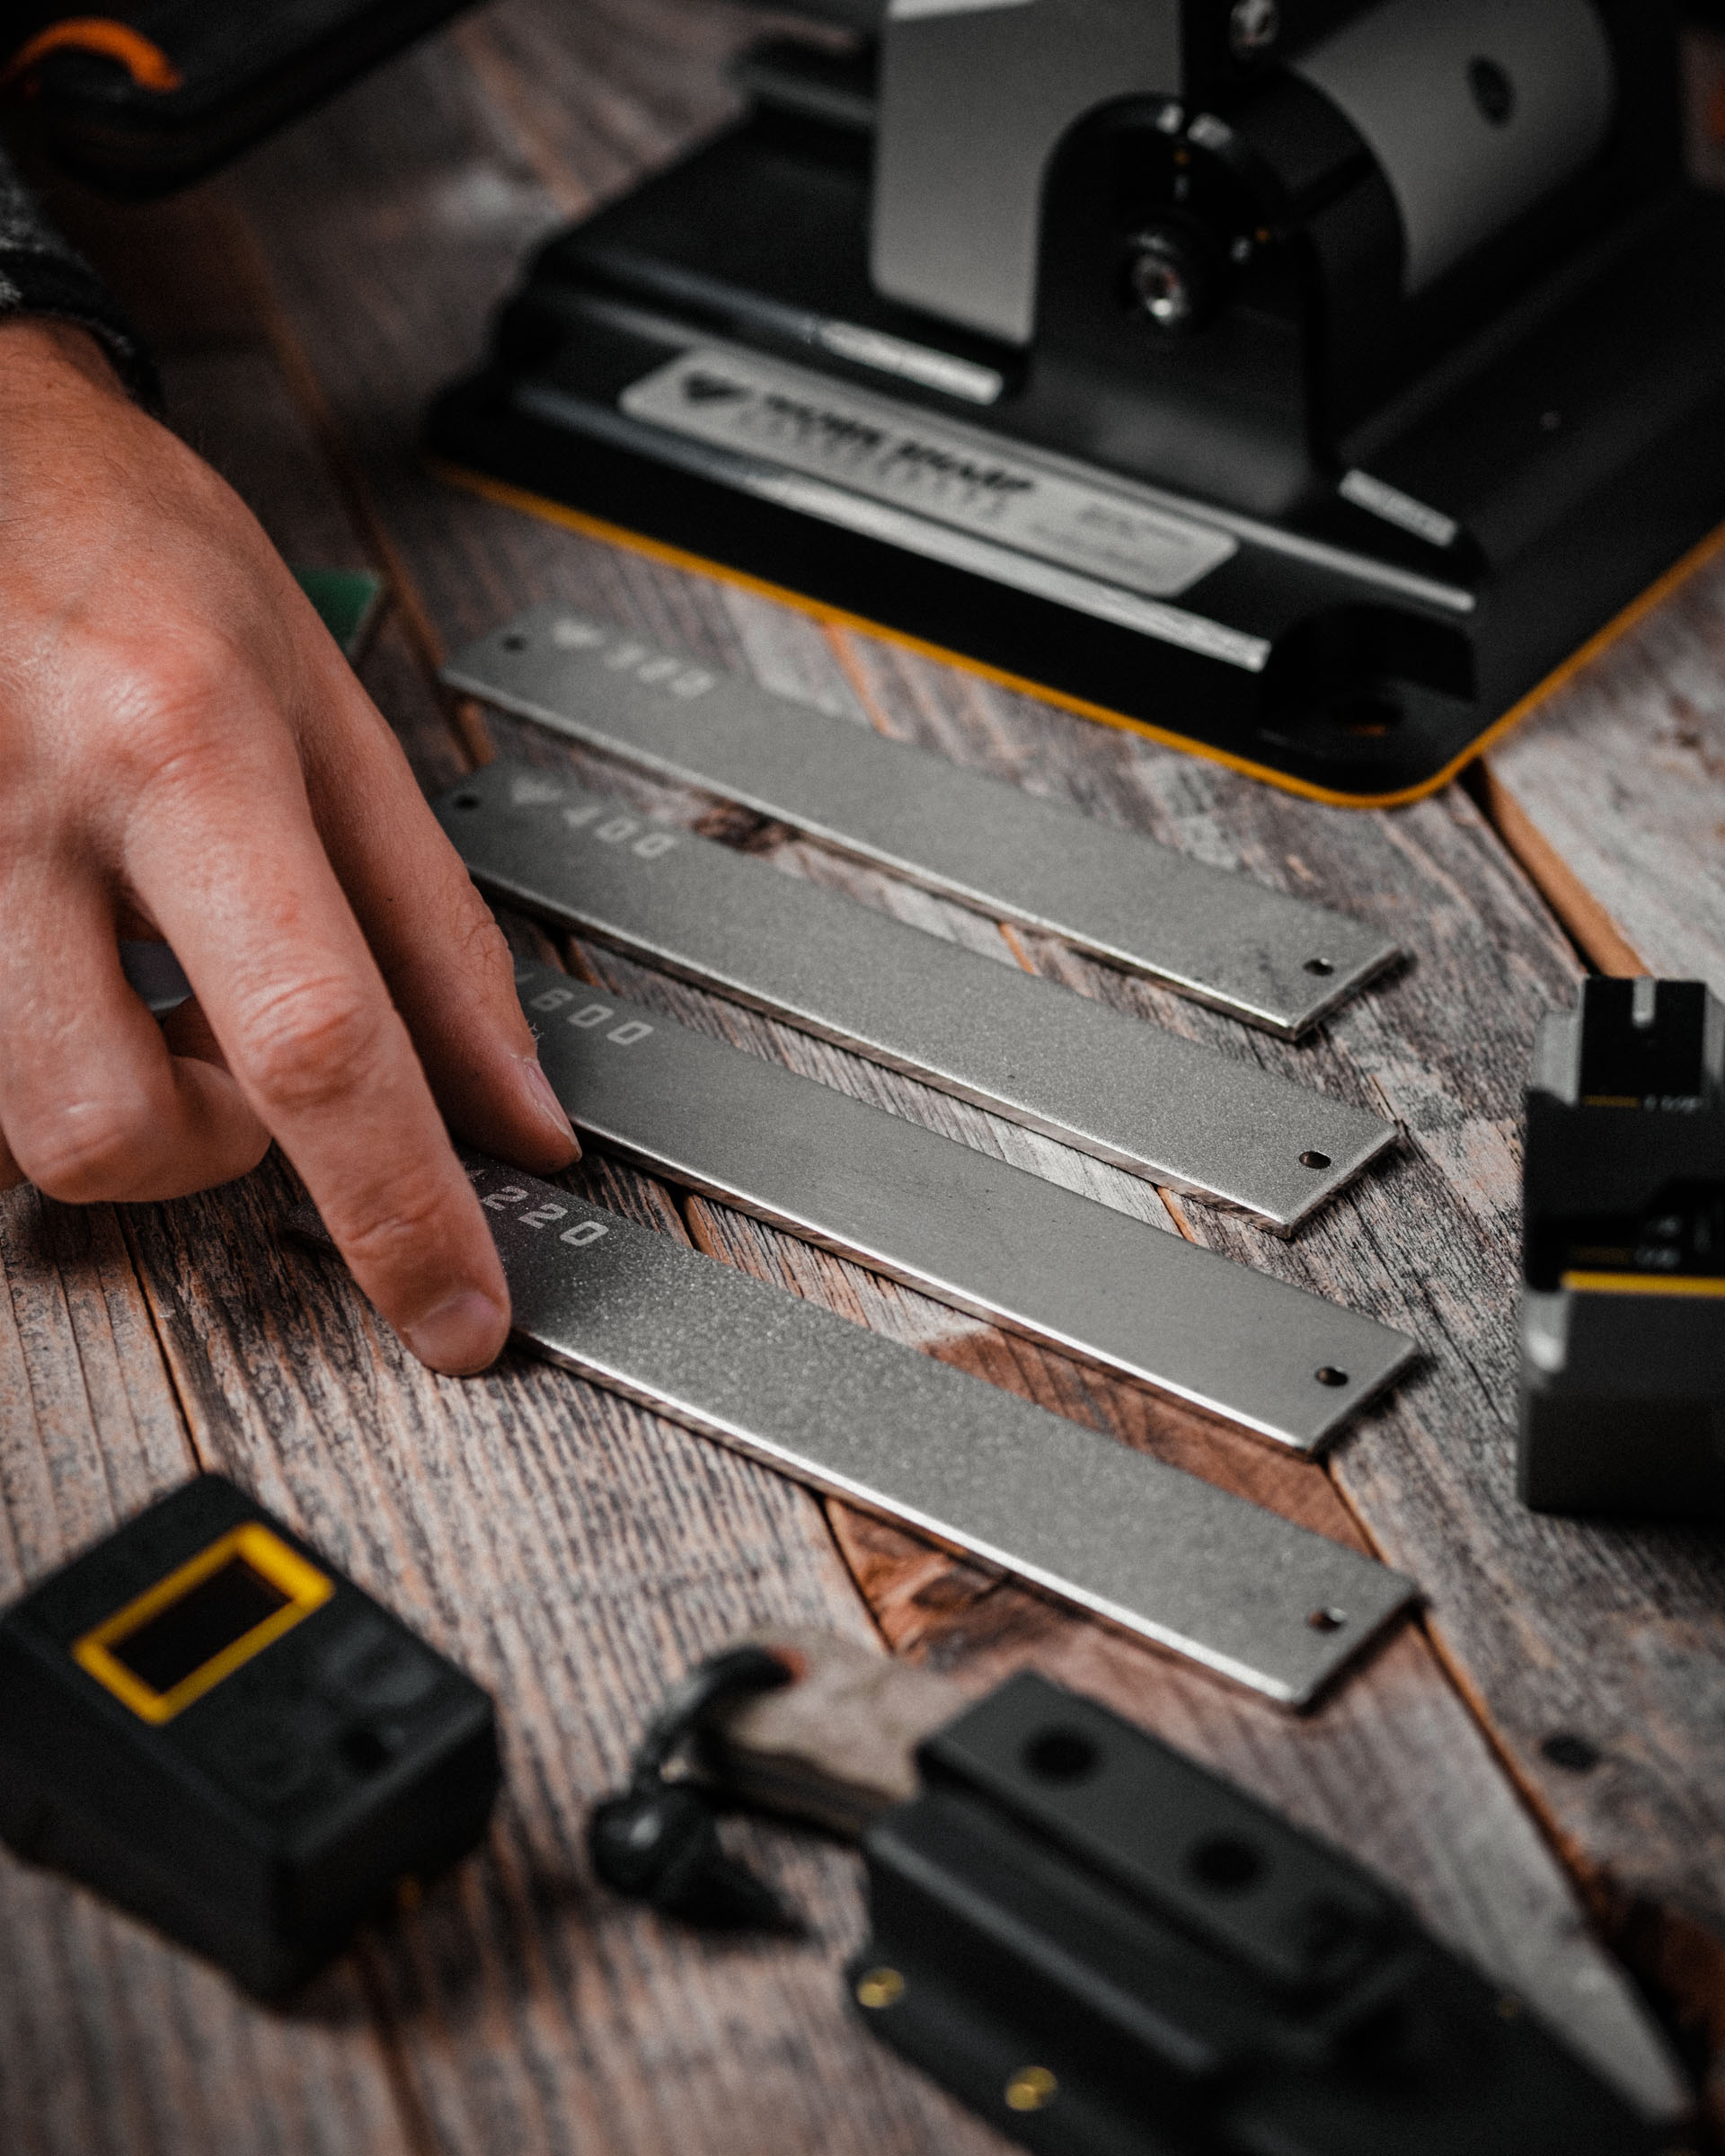 Work Sharp Professional Precision Adjust Knife Sharpener - REC